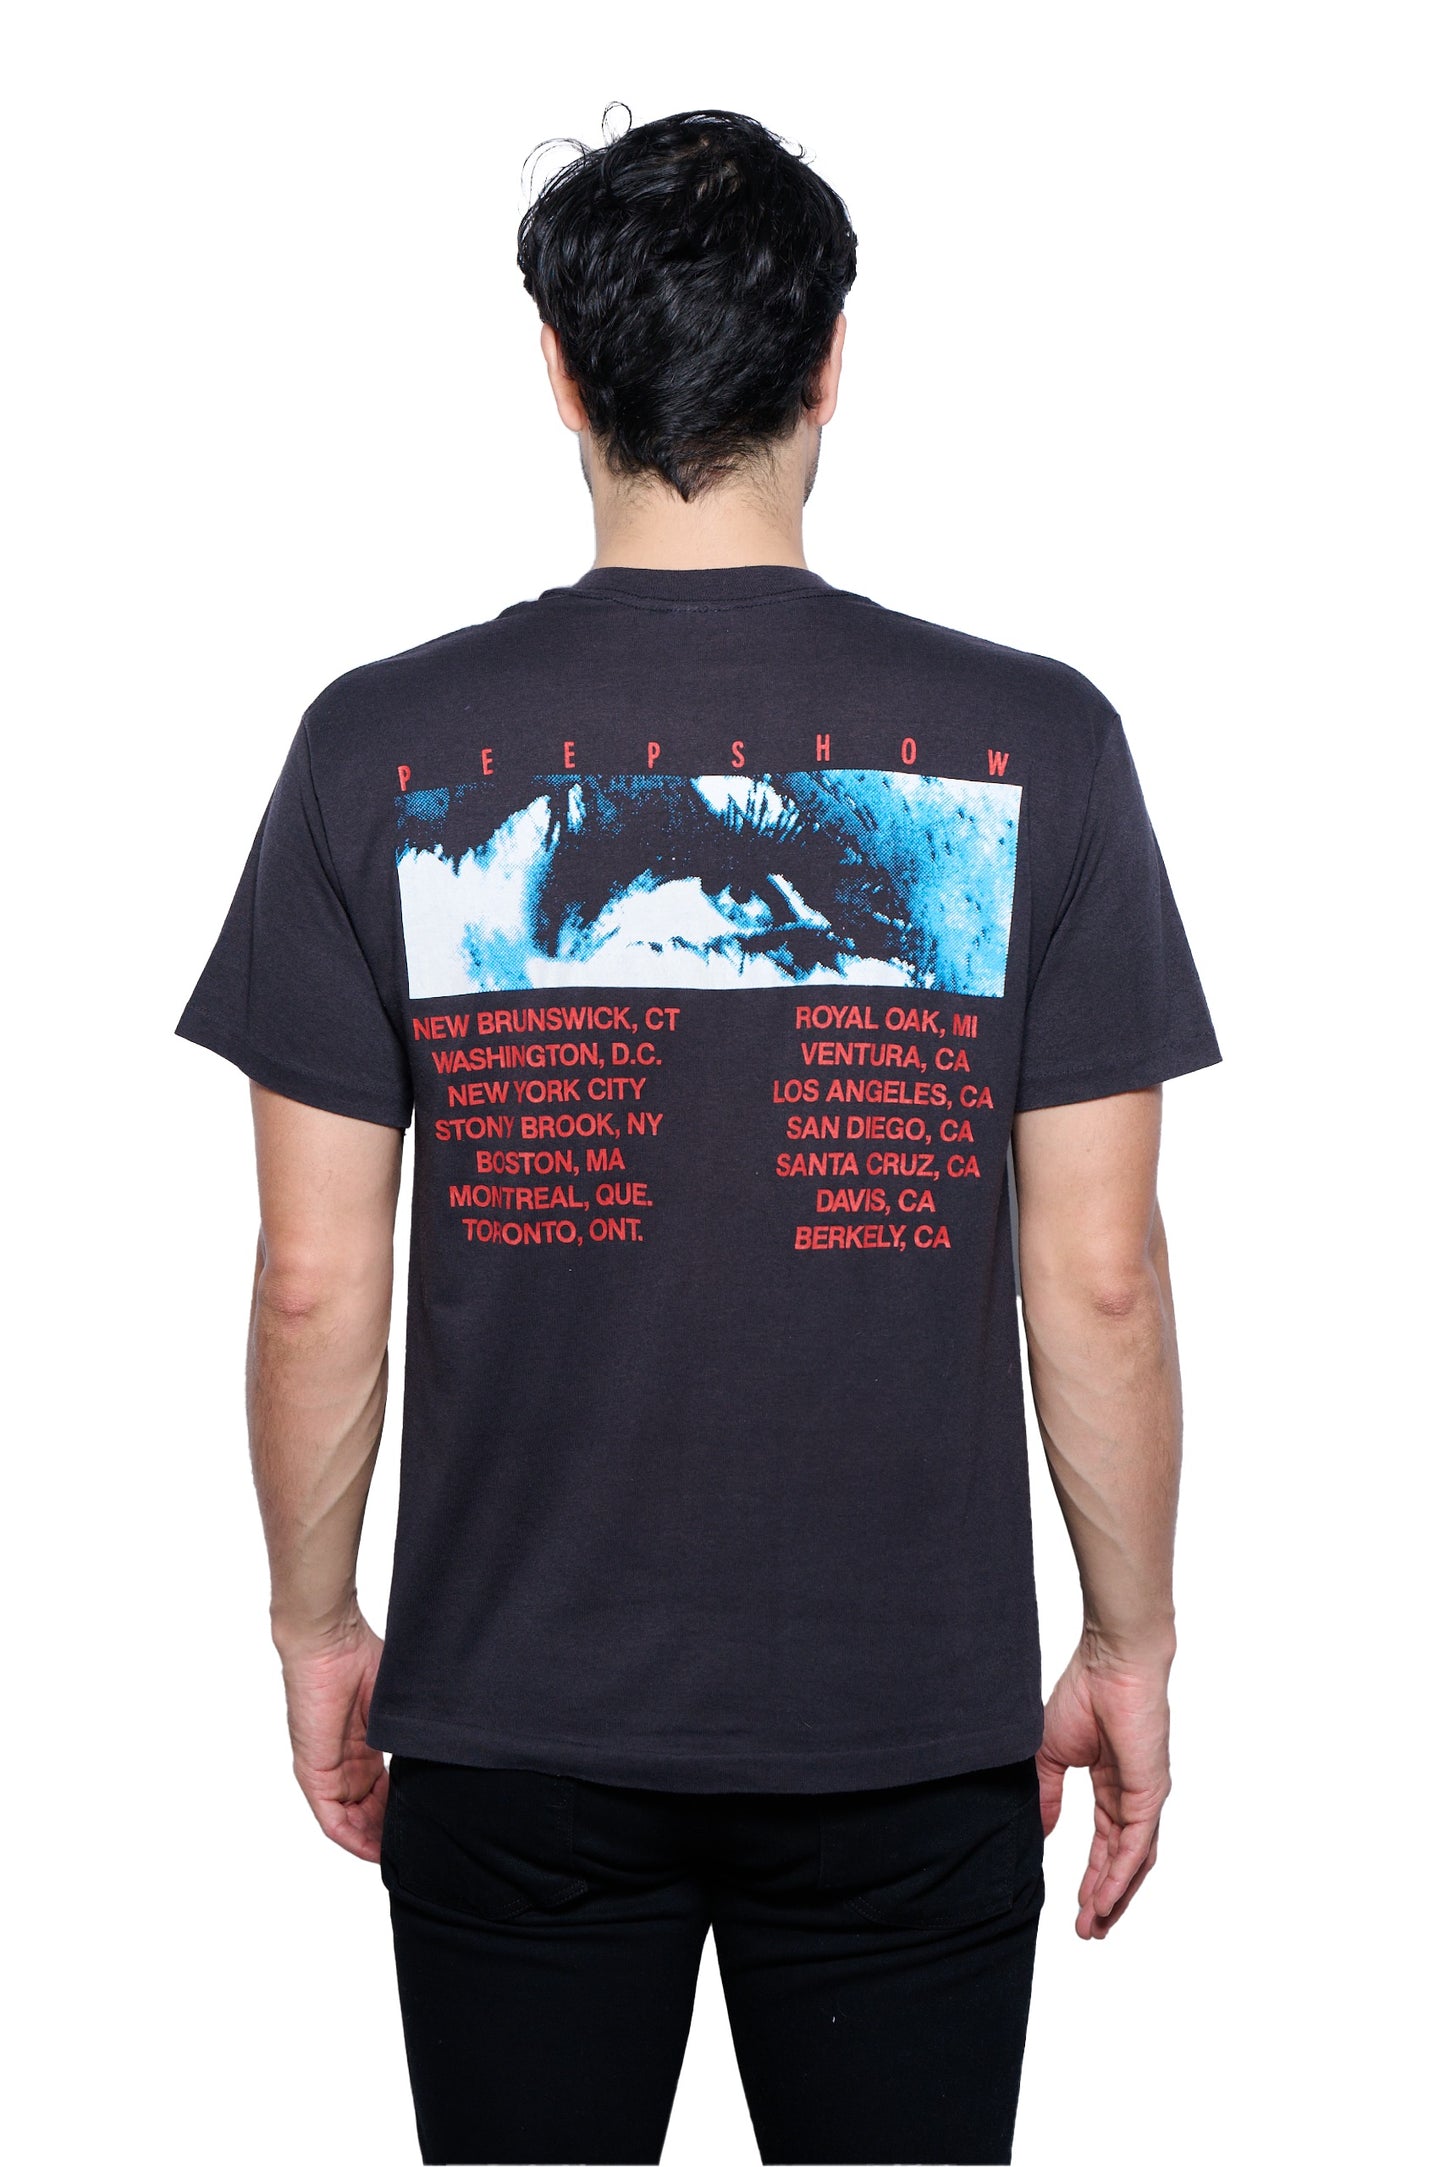 Vintage 1988 Siouxsie & The Banshees Peepshow Tour T-Shirt